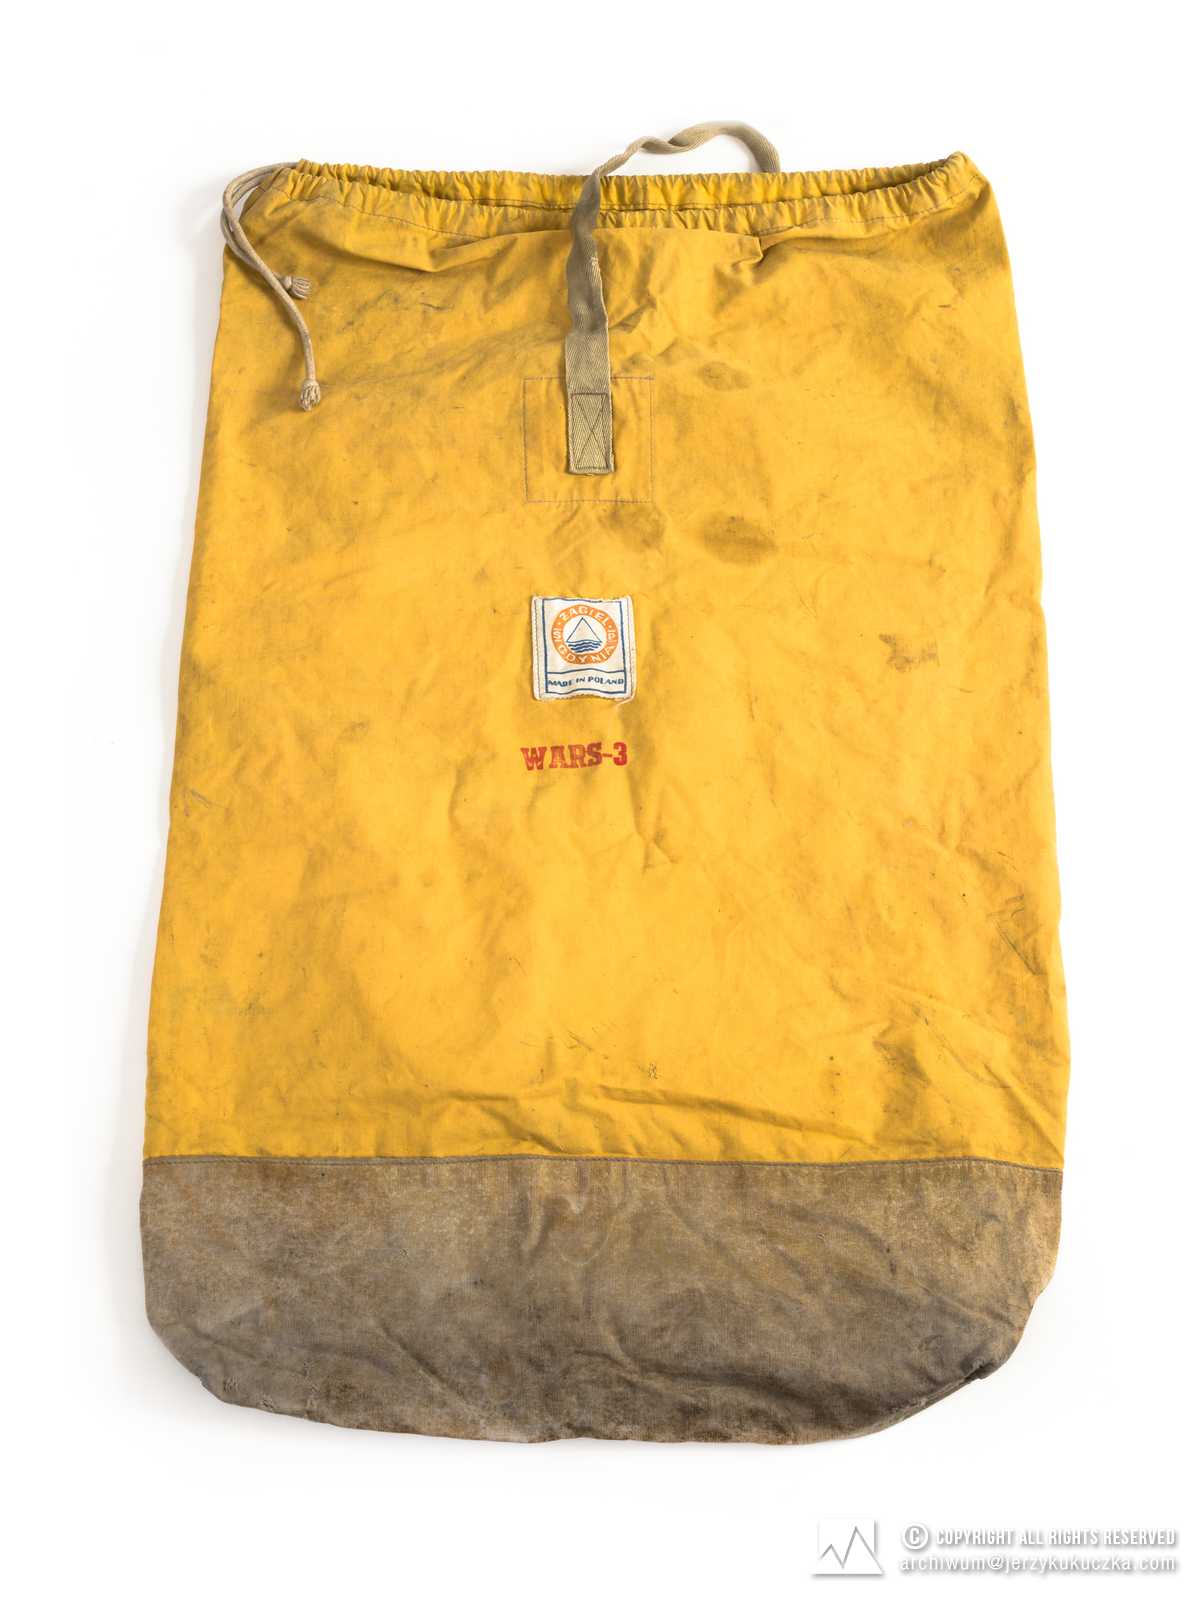 Worek bagażowy firmy Żagiel. Żółty ze szarym spodem, ściągany sznurkiem, spód wzmocniony, wszyty uchwyt z taśmy, długość- 77 cm, szerokość- 45 cm. Lata 60-80 XXw. Żagiel